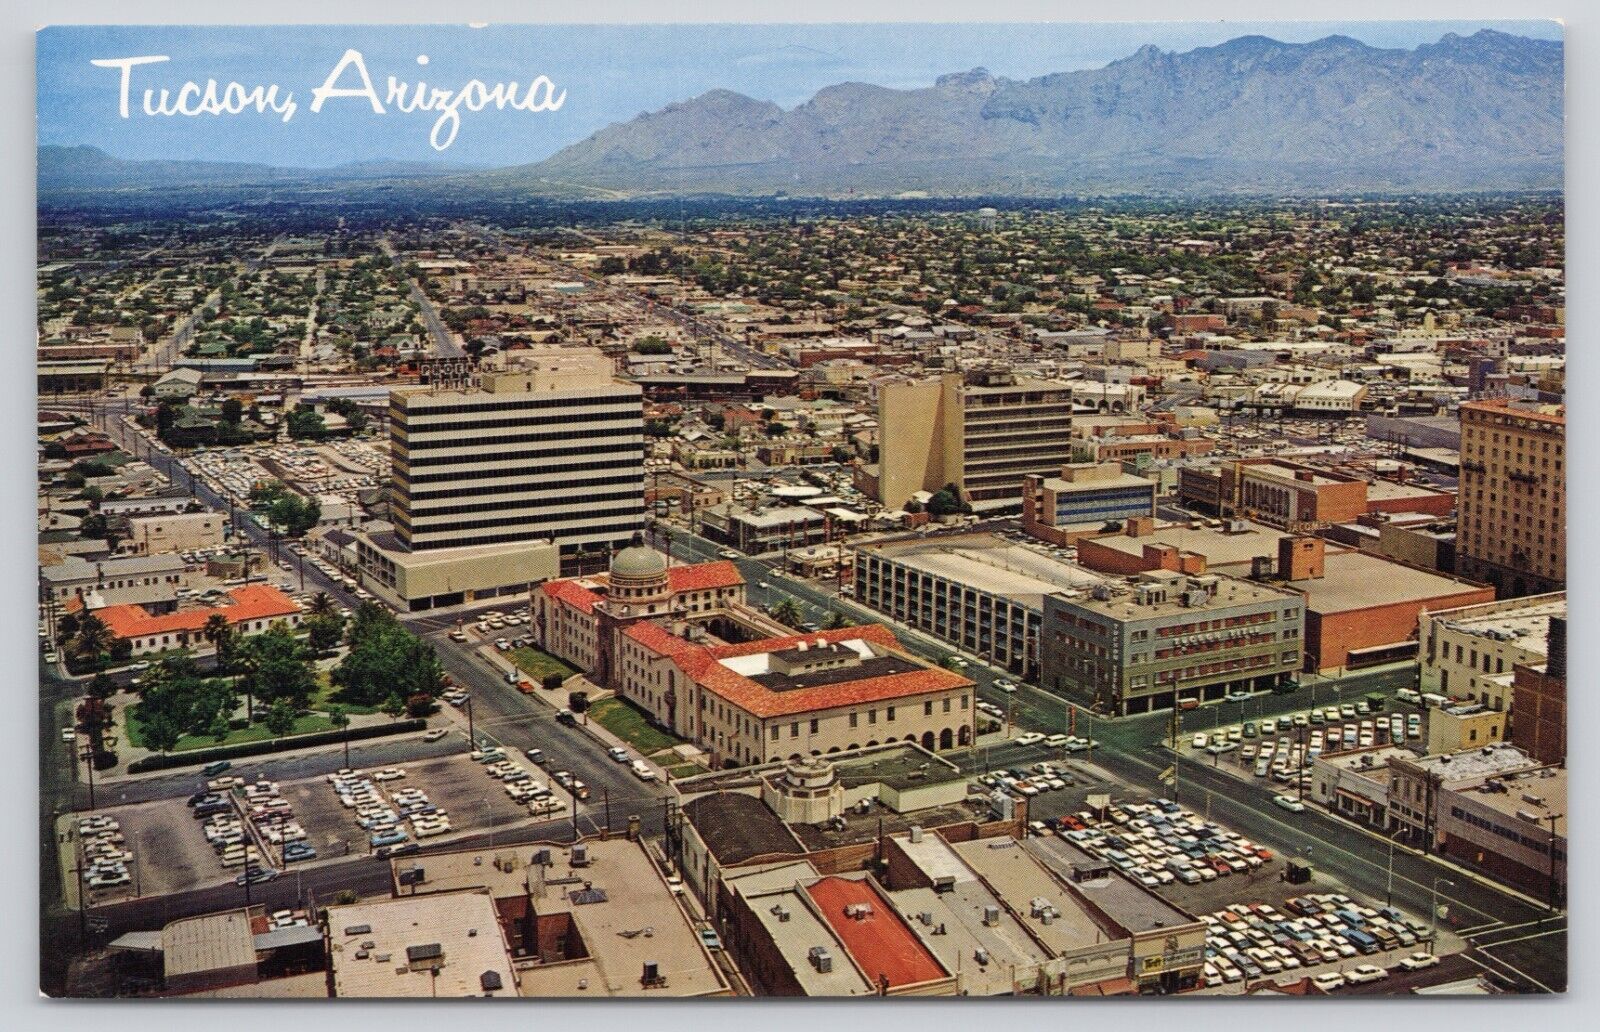 Downtown Tucson Arizona AZ Santa Catalina Mountains Aerial View Vintage Postcard